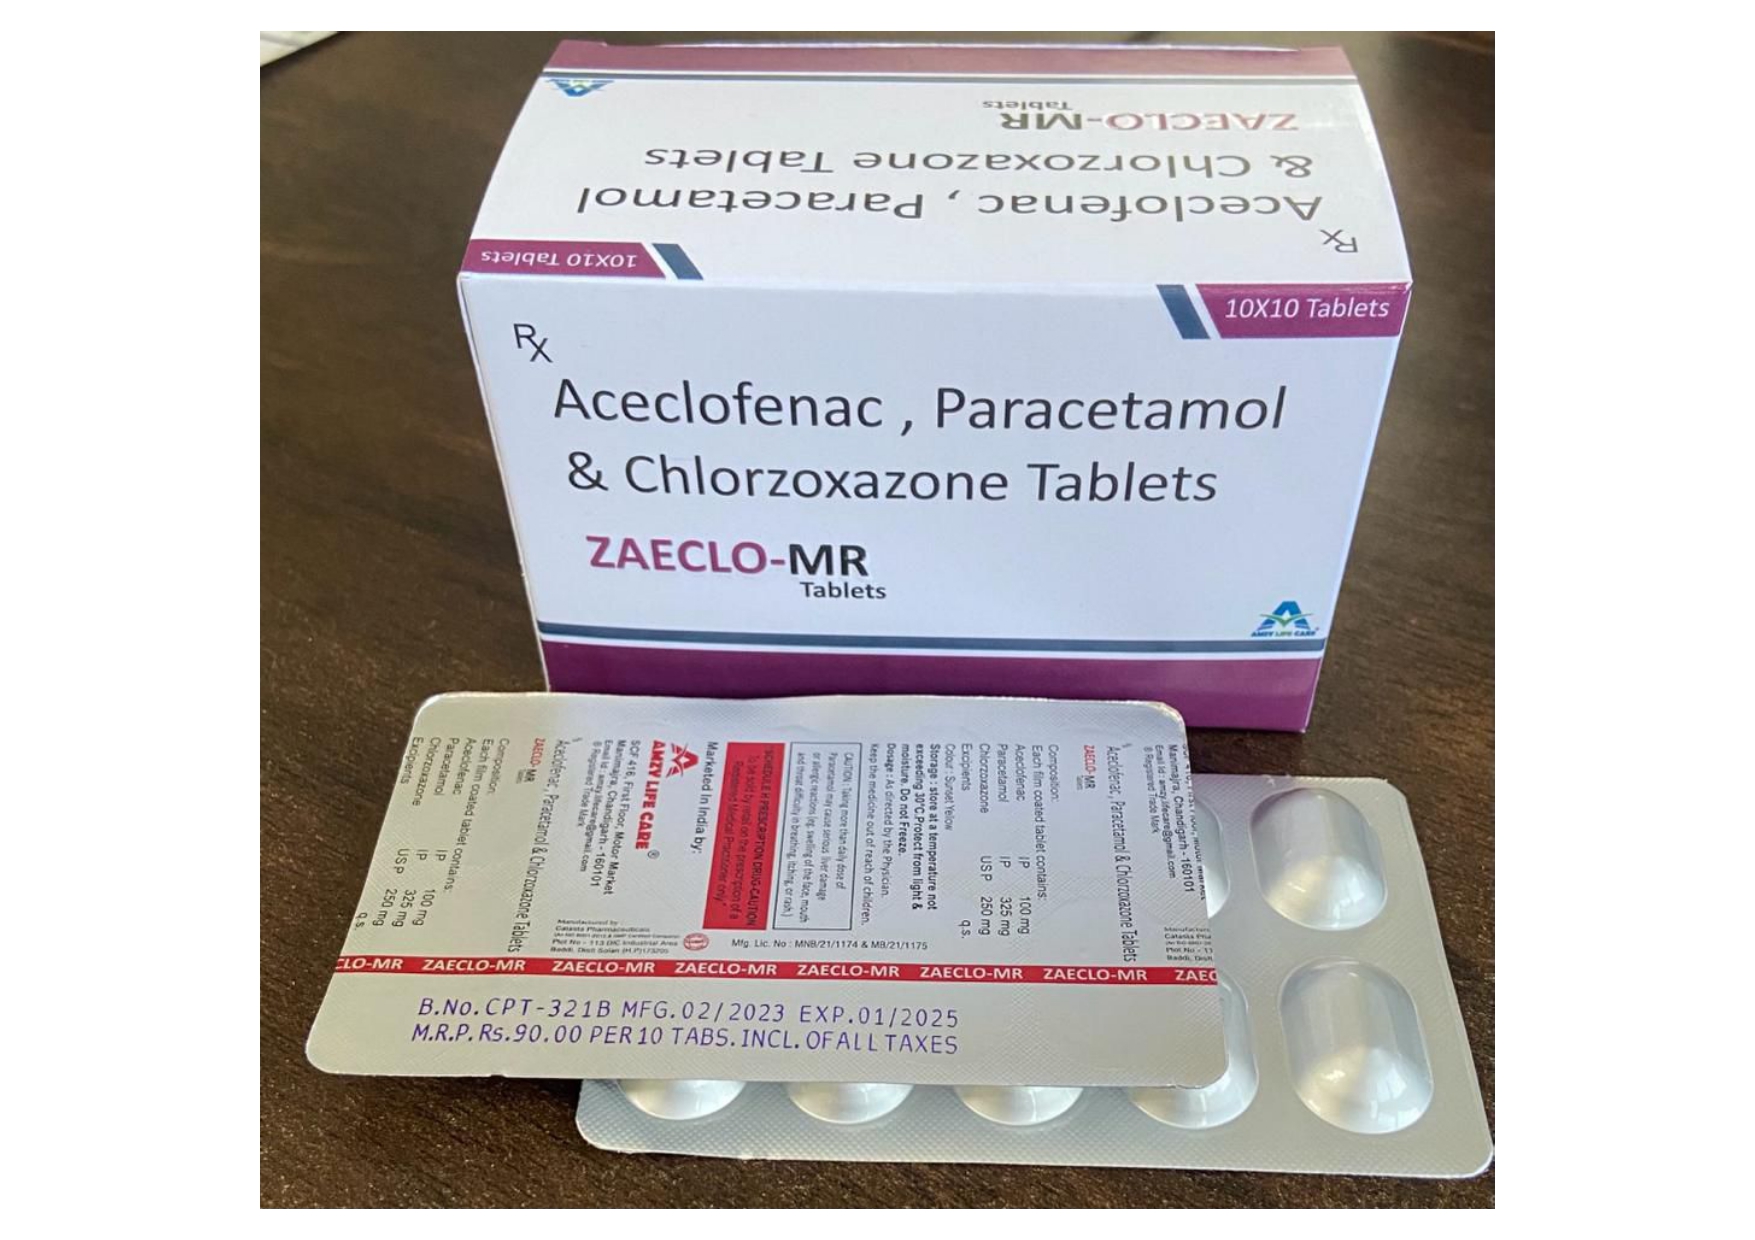 aceclofenac 100mg + para 325mg + chloro 250mg tab